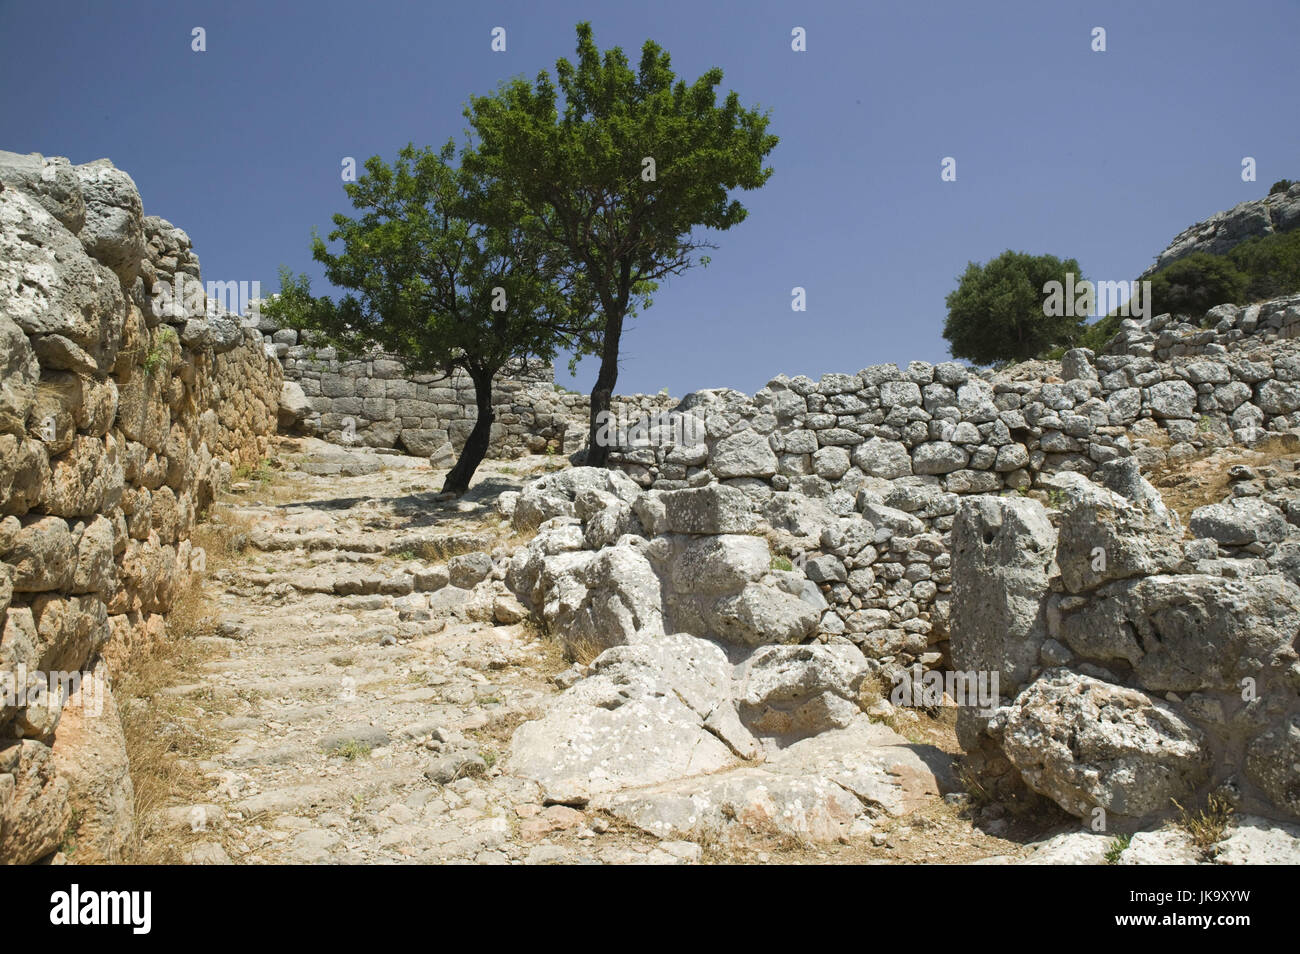 Griechenland, Kreta, Lato, Ausgrabungsstätte, Ruinen, Stadt, antik, dorisch, Foto Stock